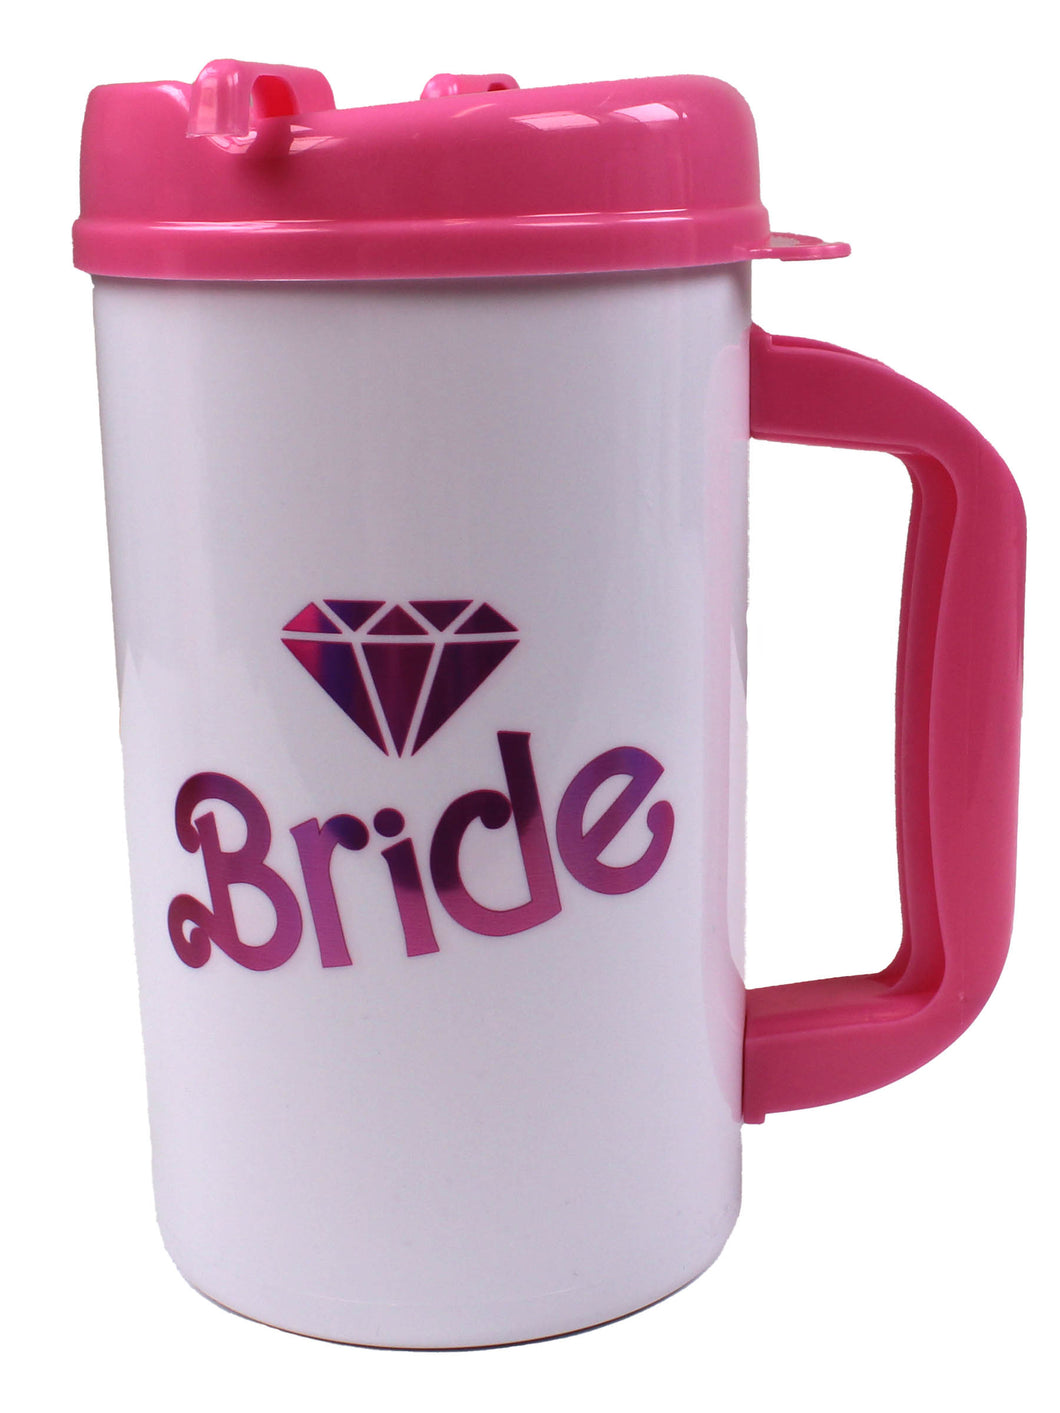 Water Jug - Bride